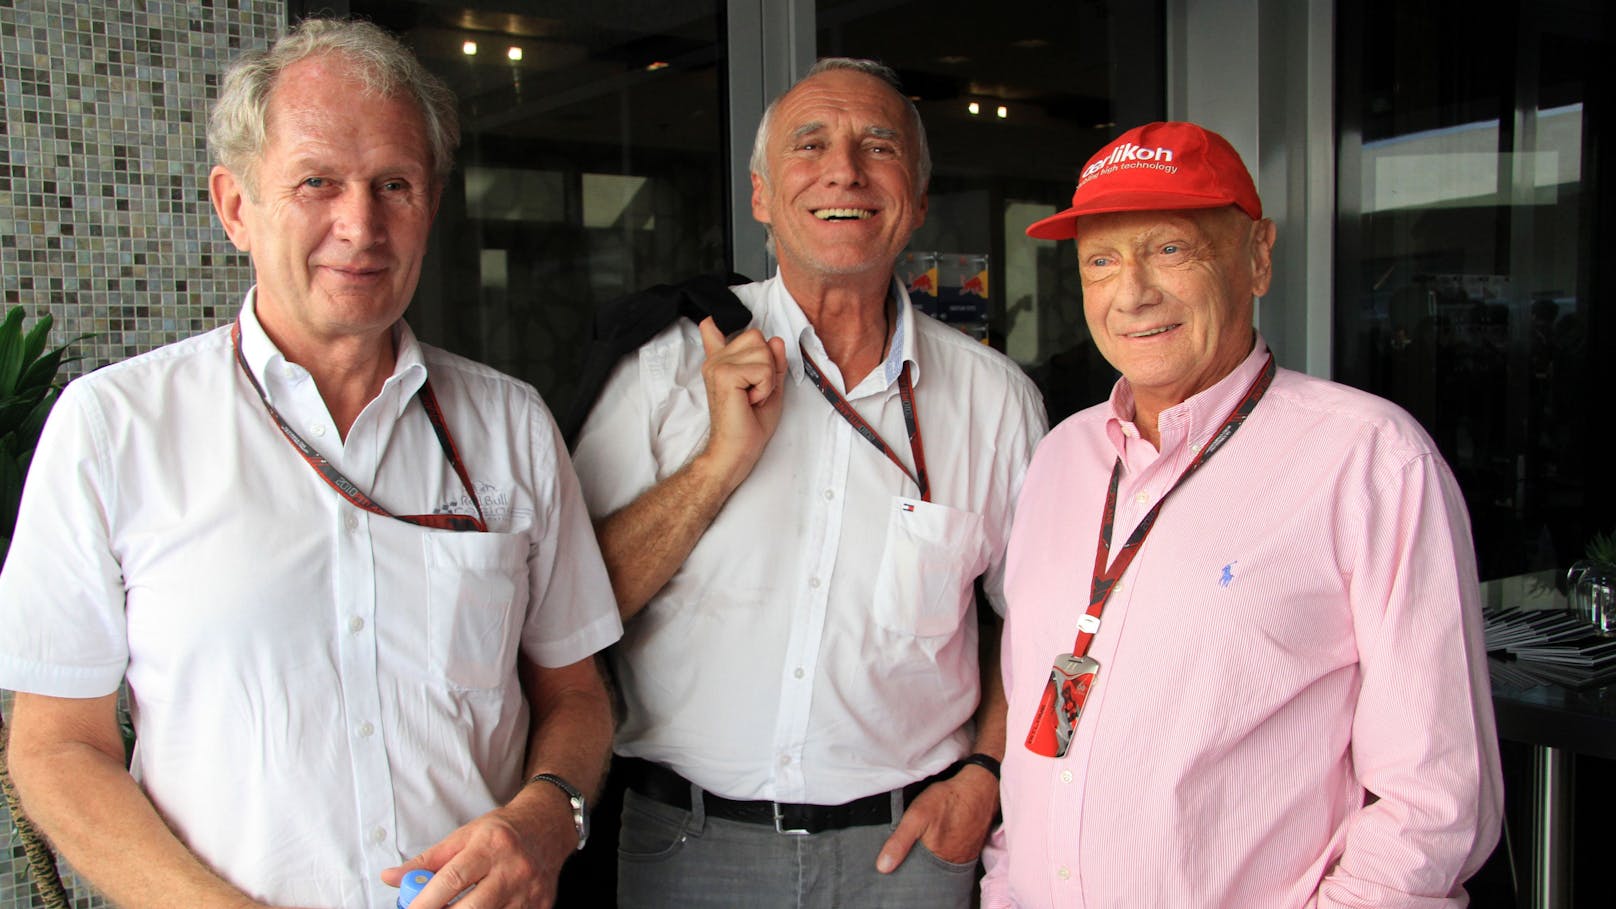 Die Drei Musketiere der Formel 1: Helmut Marko, Didi Mateschitz und Niki Lauda beim Formel 1 Grand Prix in Abu Dhabi 2010